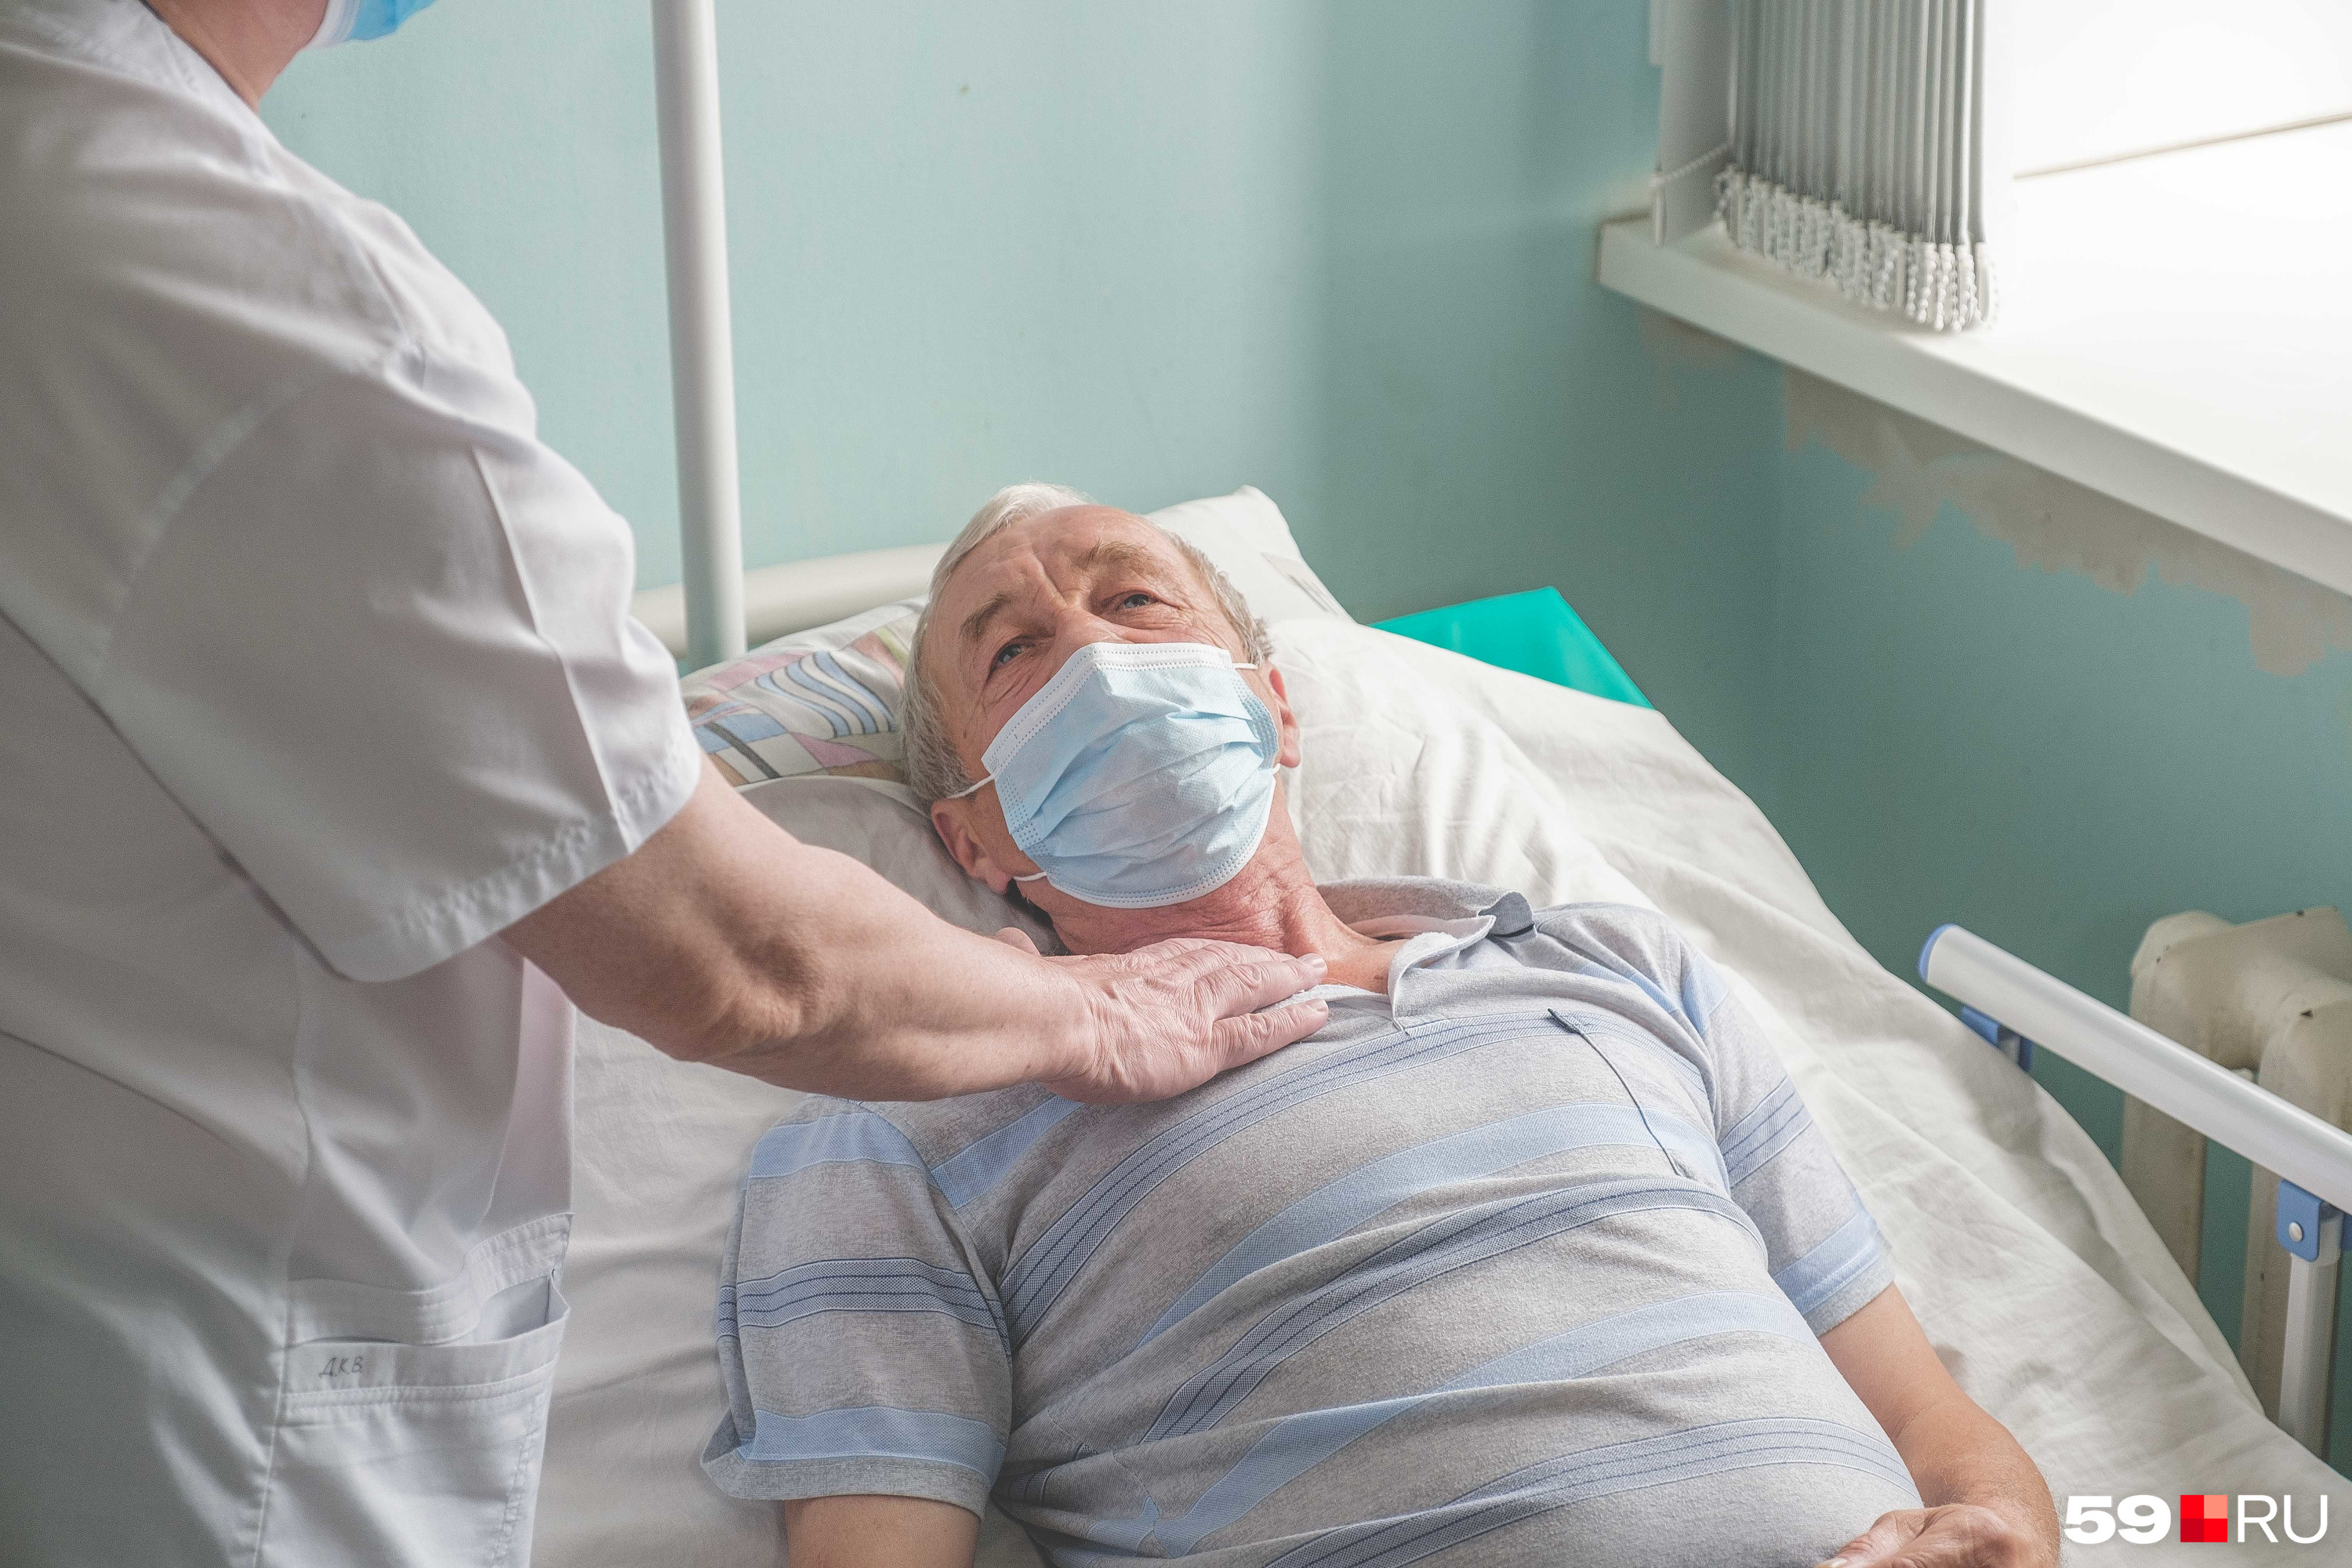 Владимир Бурехин — один из первых 15 пациентов, которым уже провели операцию по новой методике